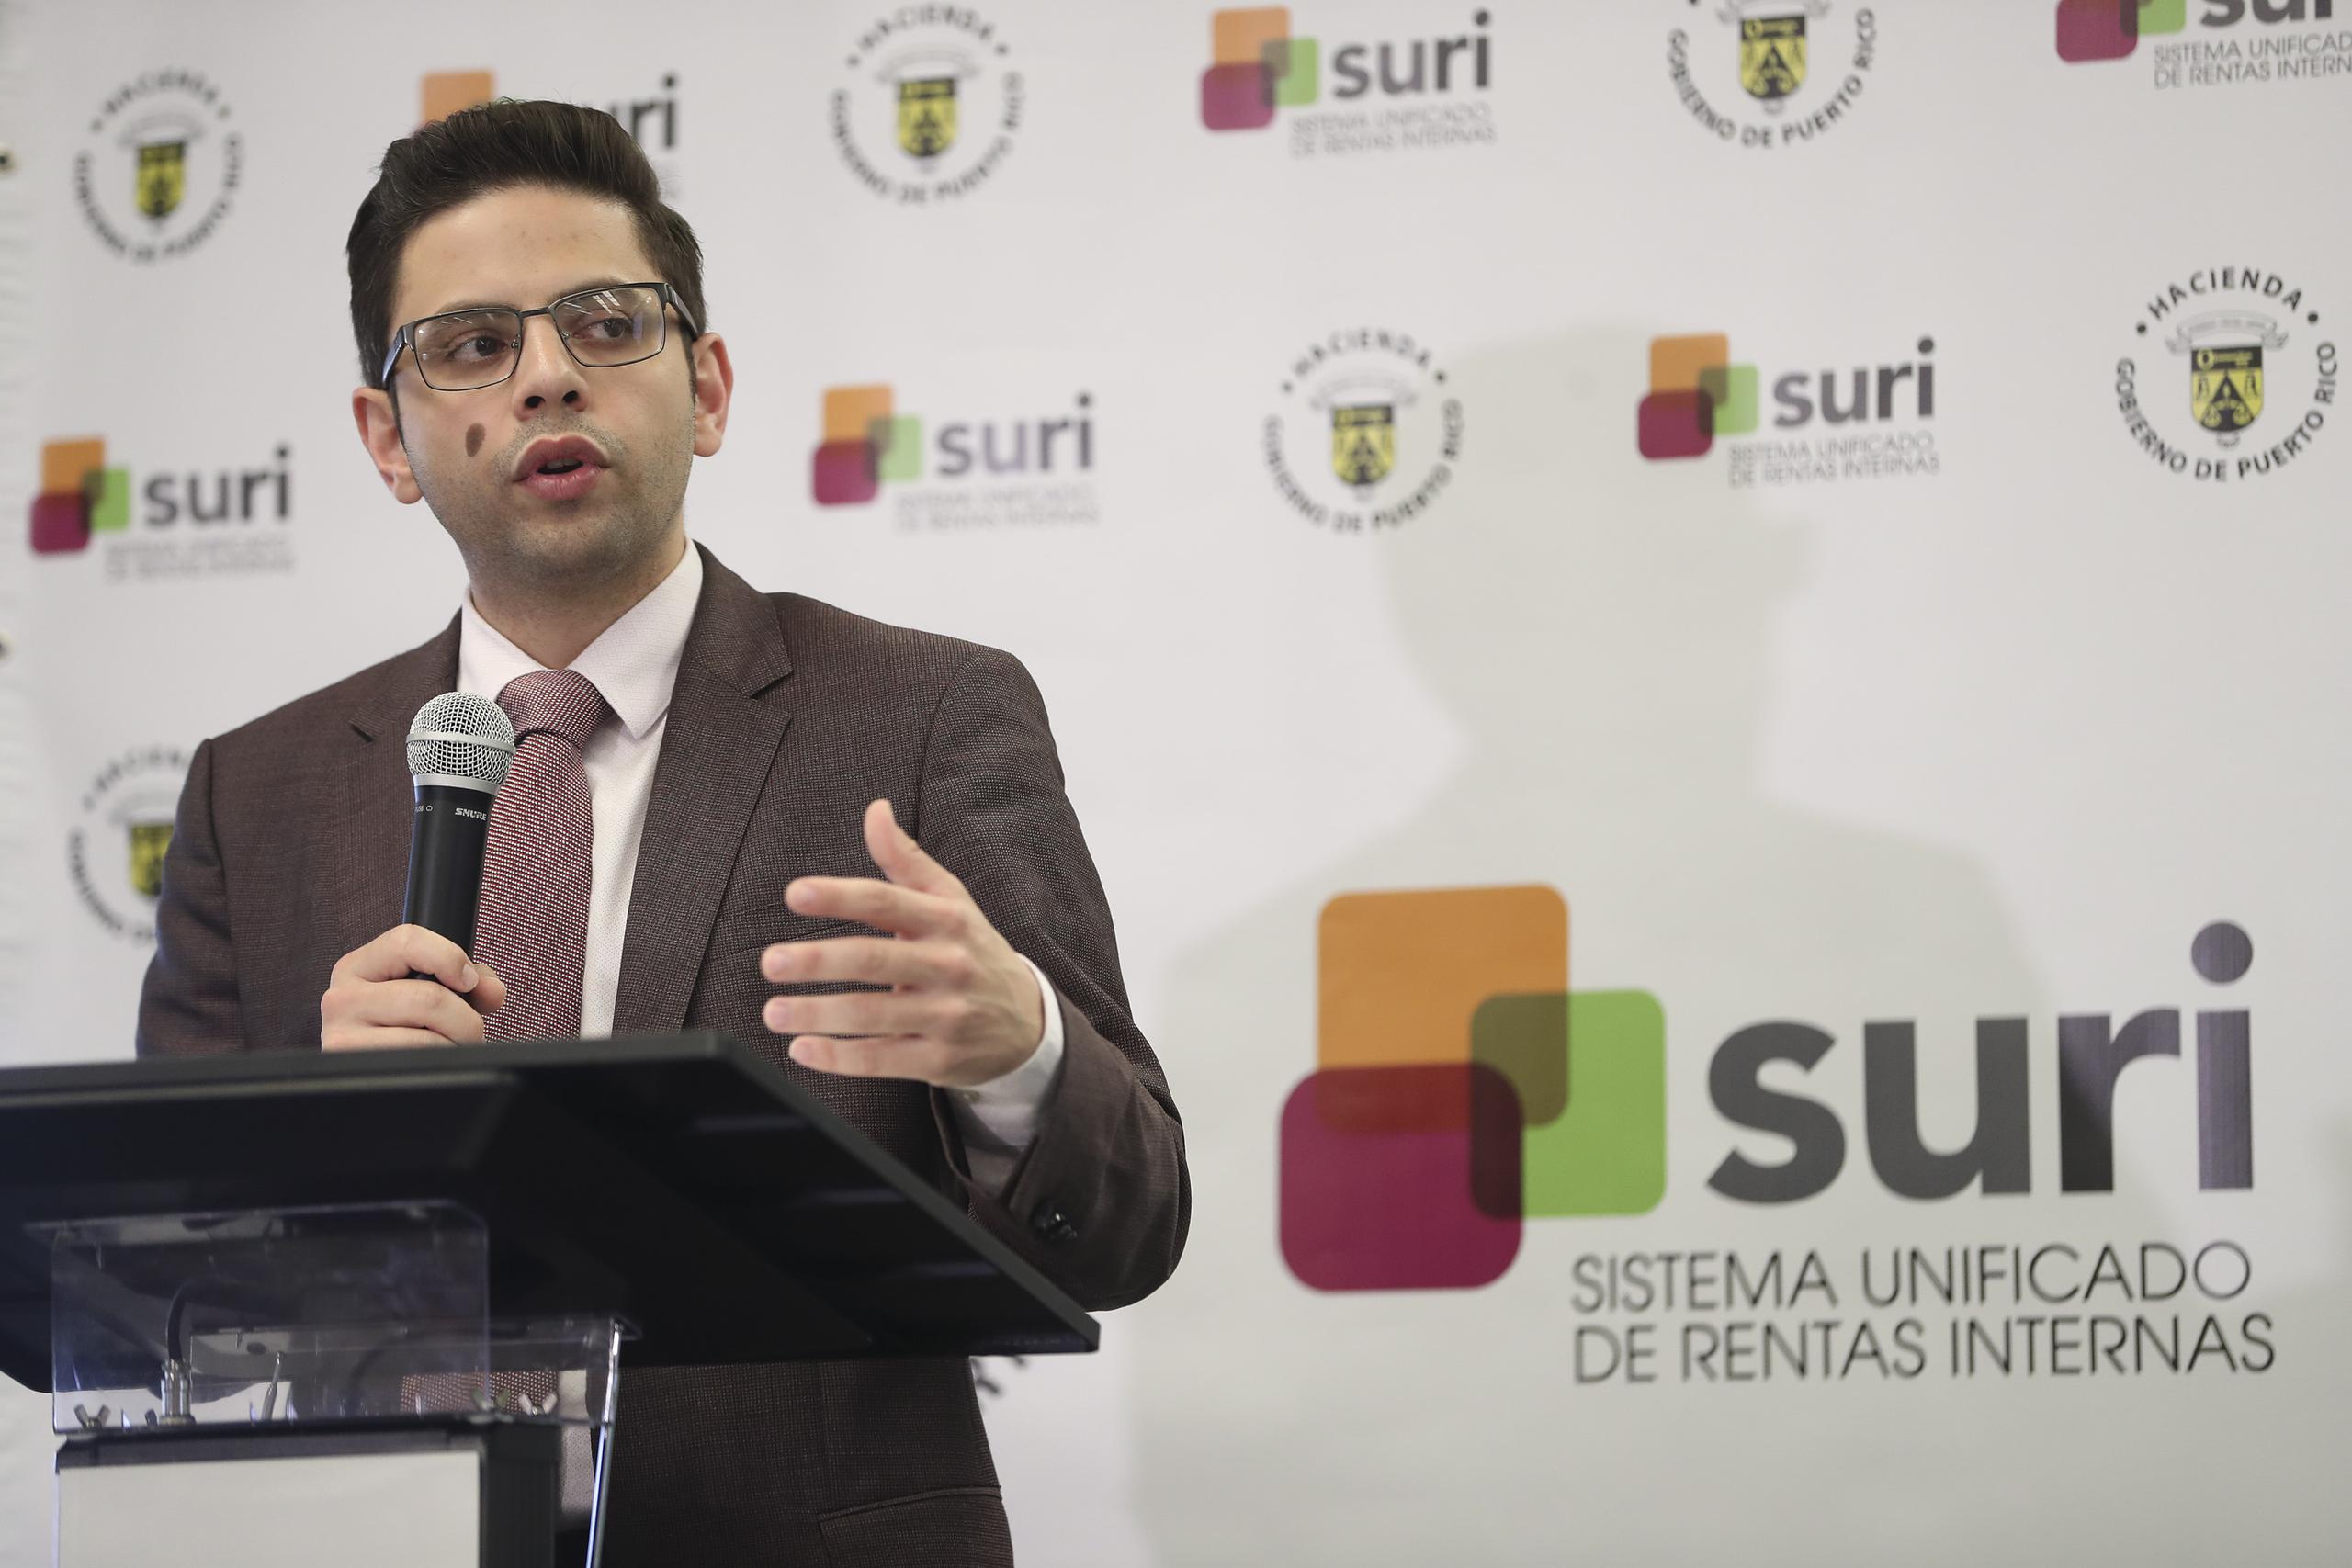 Francisco Parés informó que la implantación de SURI comenzó en octubre de 2016 con la integración a la plataforma de todas las transacciones relacionadas al IVU.